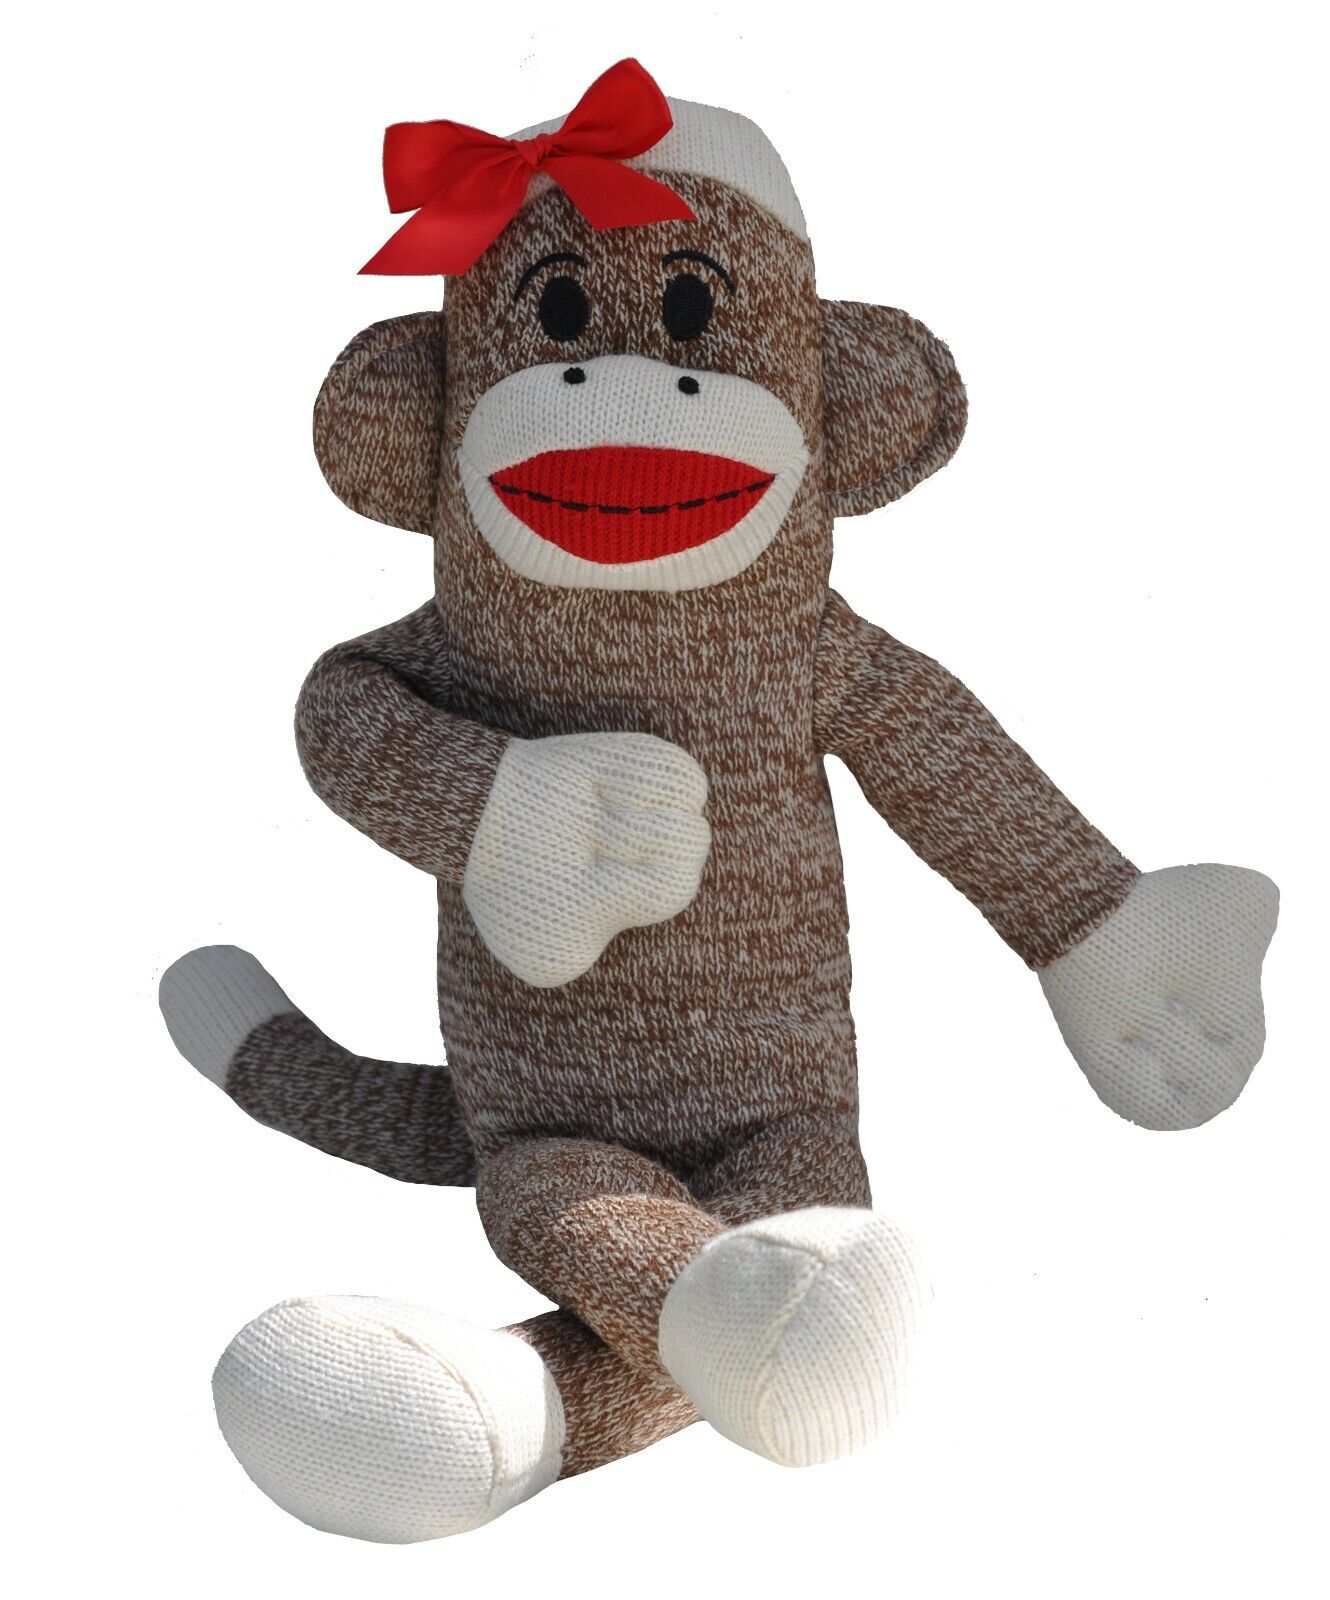 Sock Monkey Plush Cute Stuffed Animal Soft Toy Chimpanzee Girls Christmas Gift 